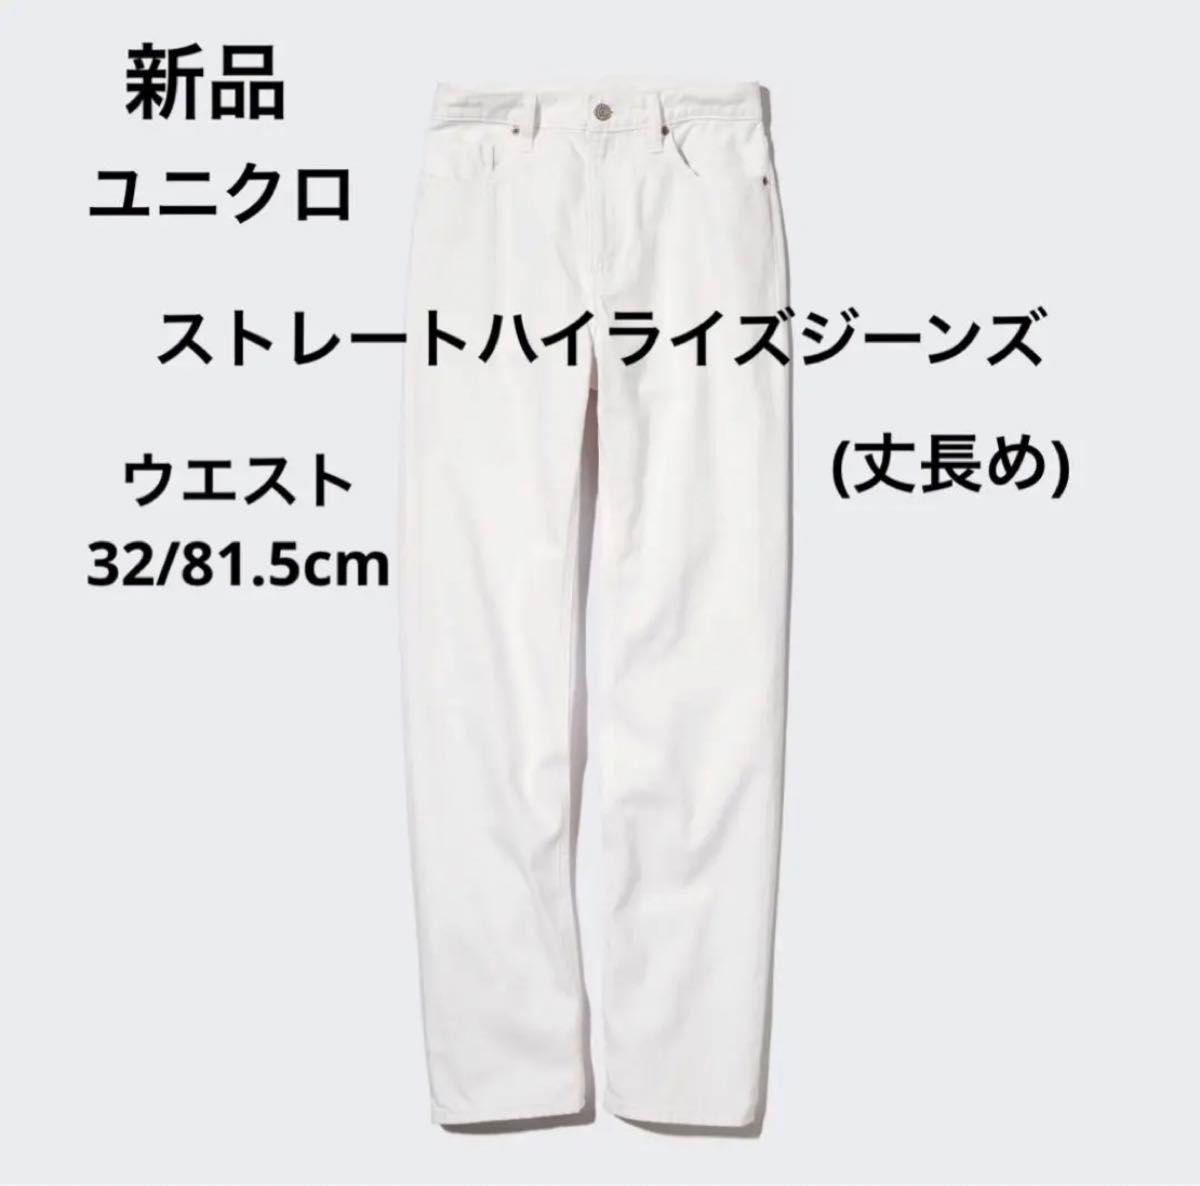 新品 ユニクロ レディース メンズ ユニセックス ストレートハイライズジーンズ 丈長め 白色 大きいサイズ XL-3L